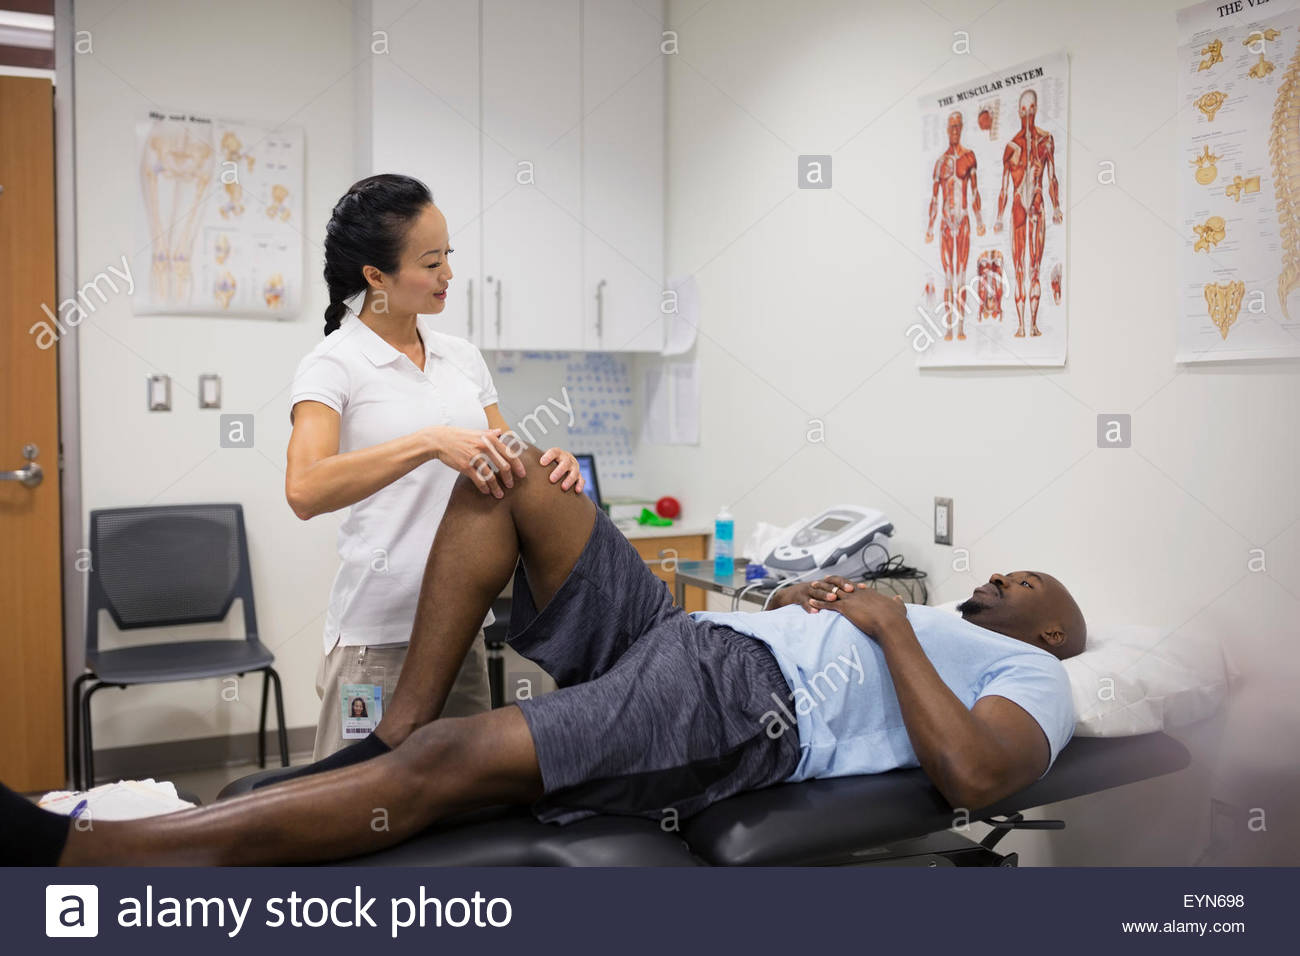 Le massage thérapeute physique du genou du patient en salle d'examen Banque D'Images